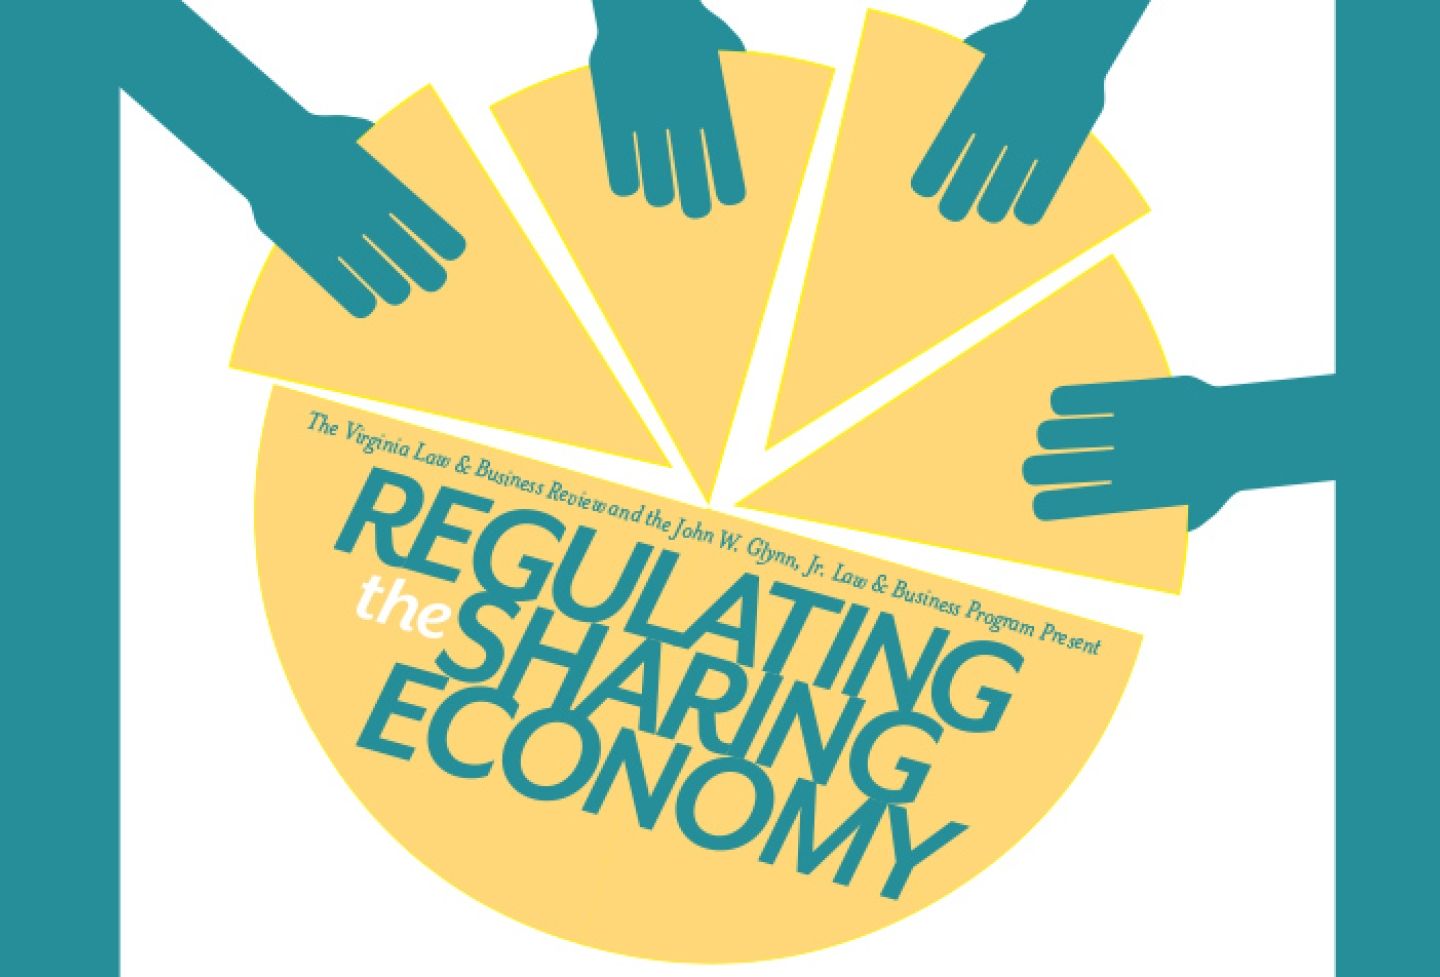 Regulating the Sharing Economy